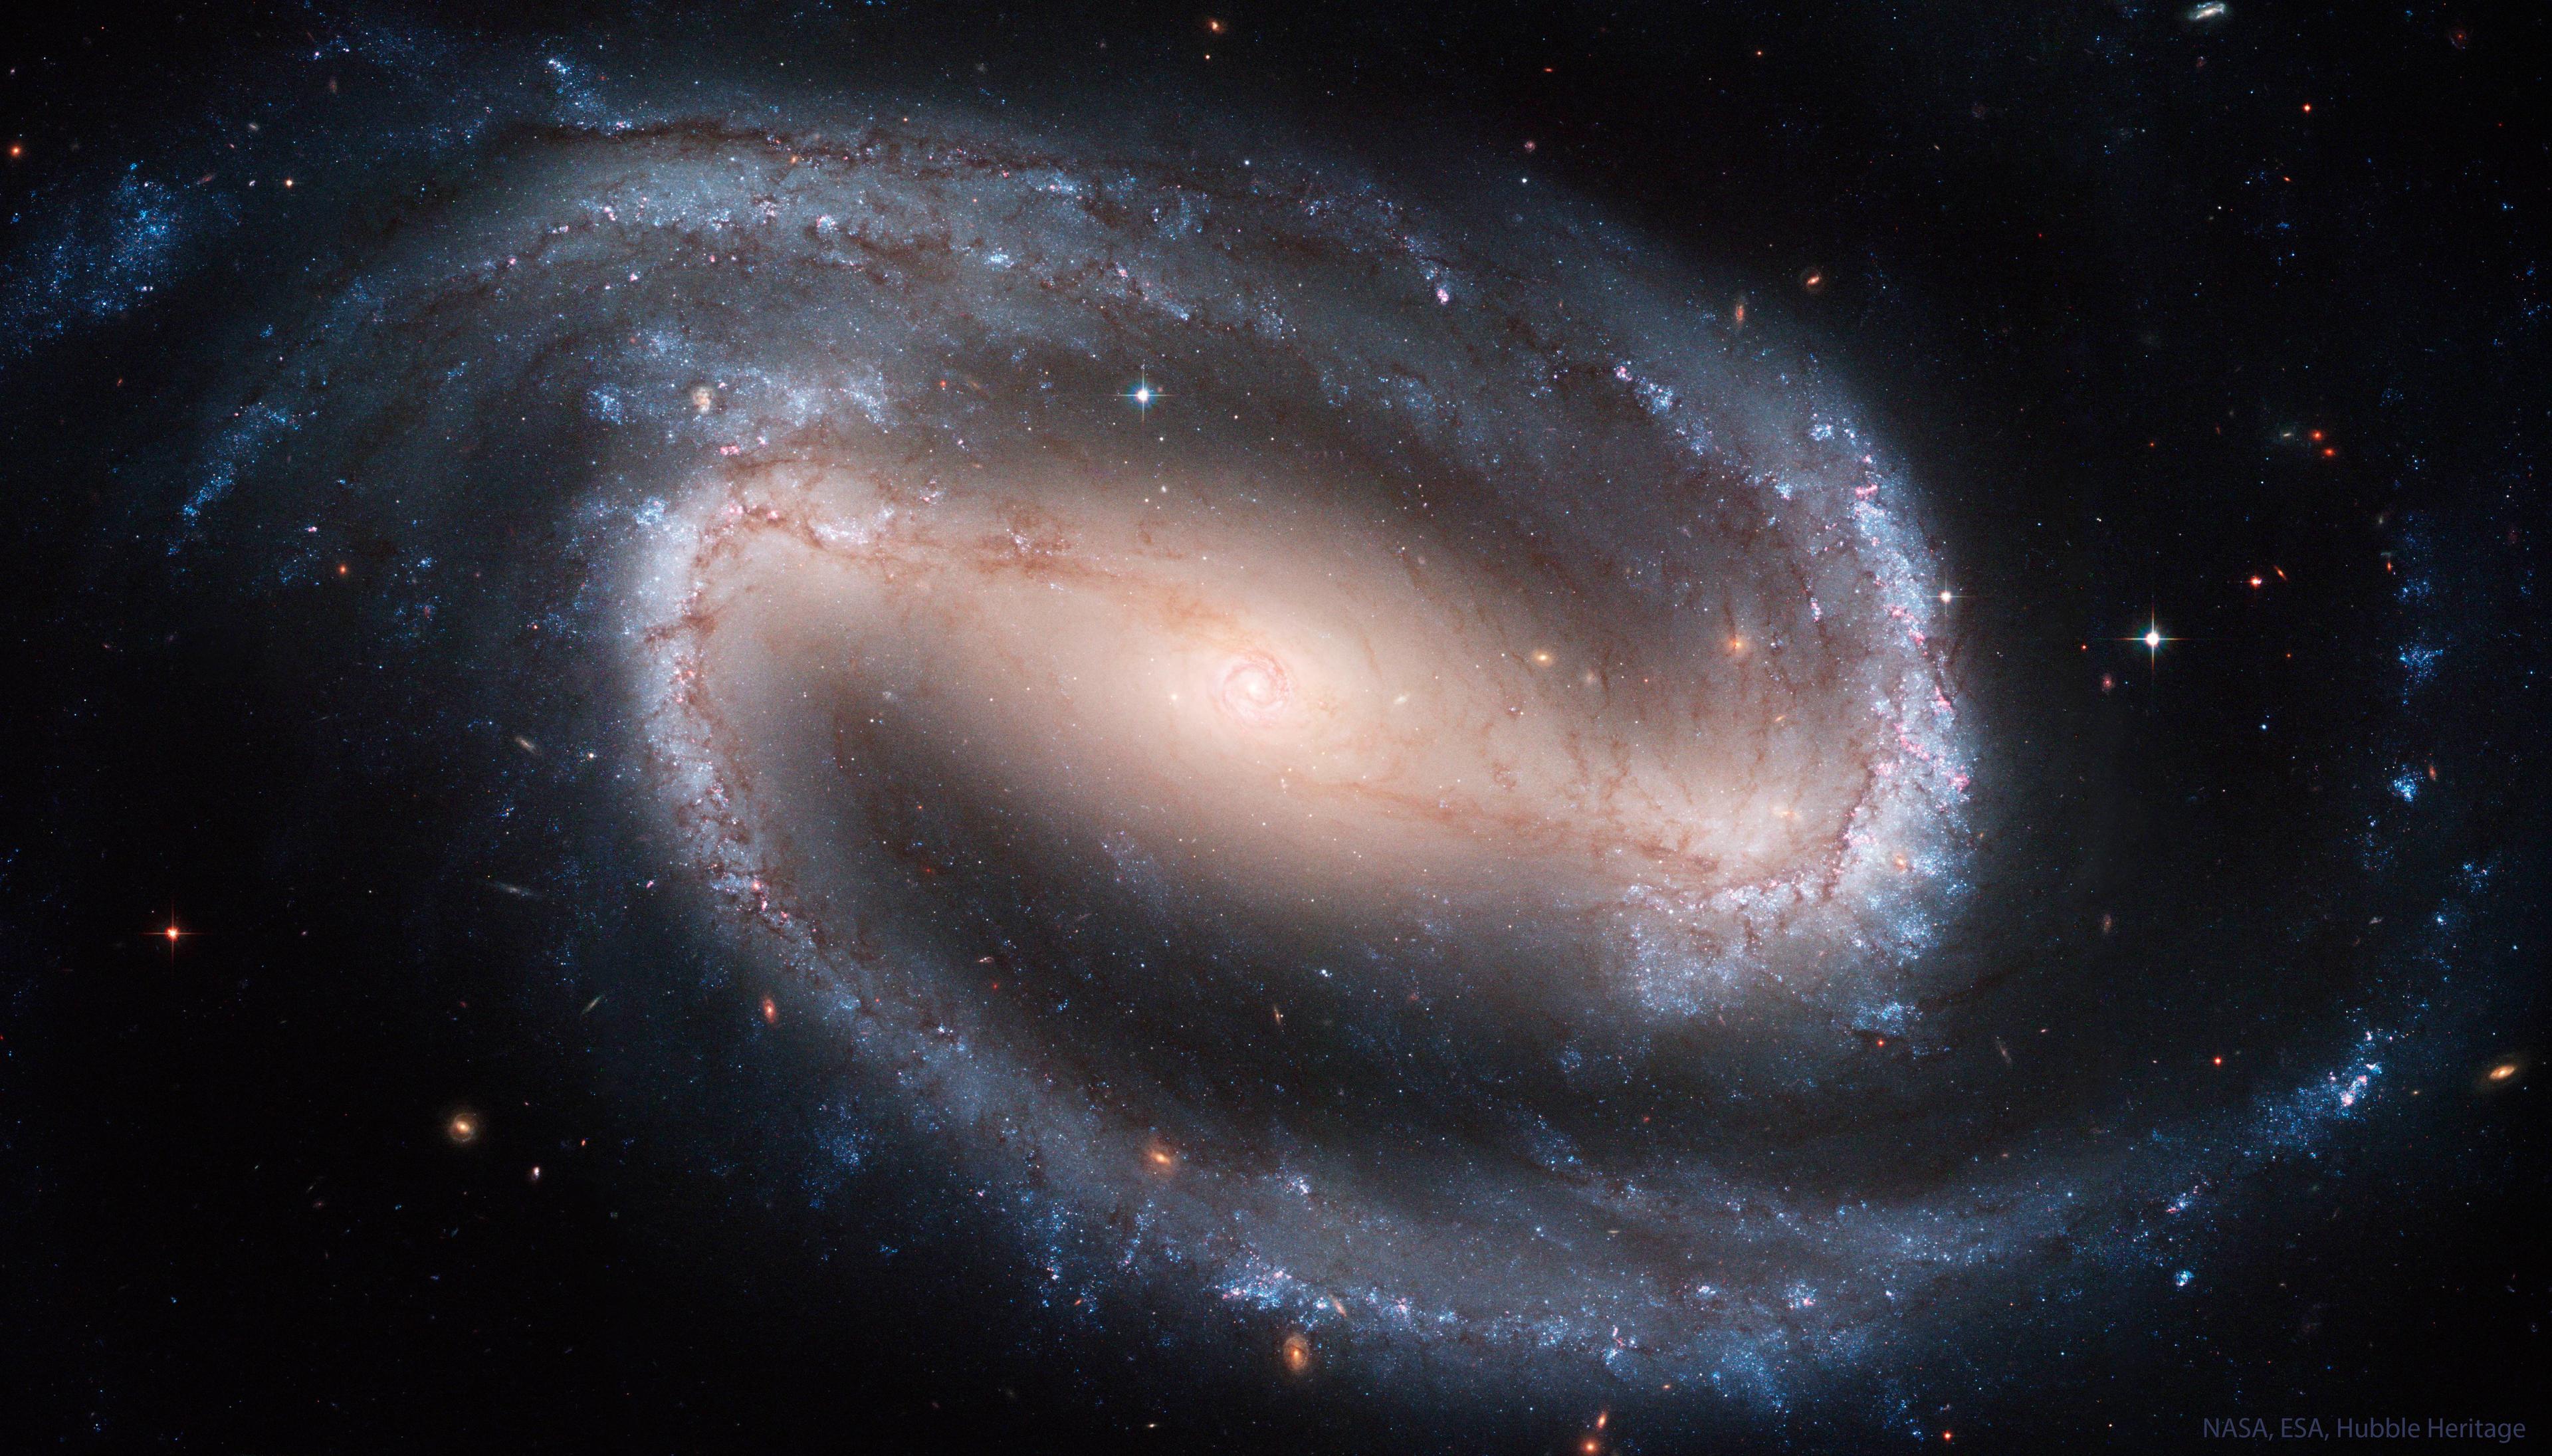 المجرّة الحلزونيّة الضلعيّة الكبيرة والجميلة إن‌جي‌سي 1300 بأذرعٍ حلزونيّة ضامّة مصطبغة بالأزرق من النجوم اليافعة